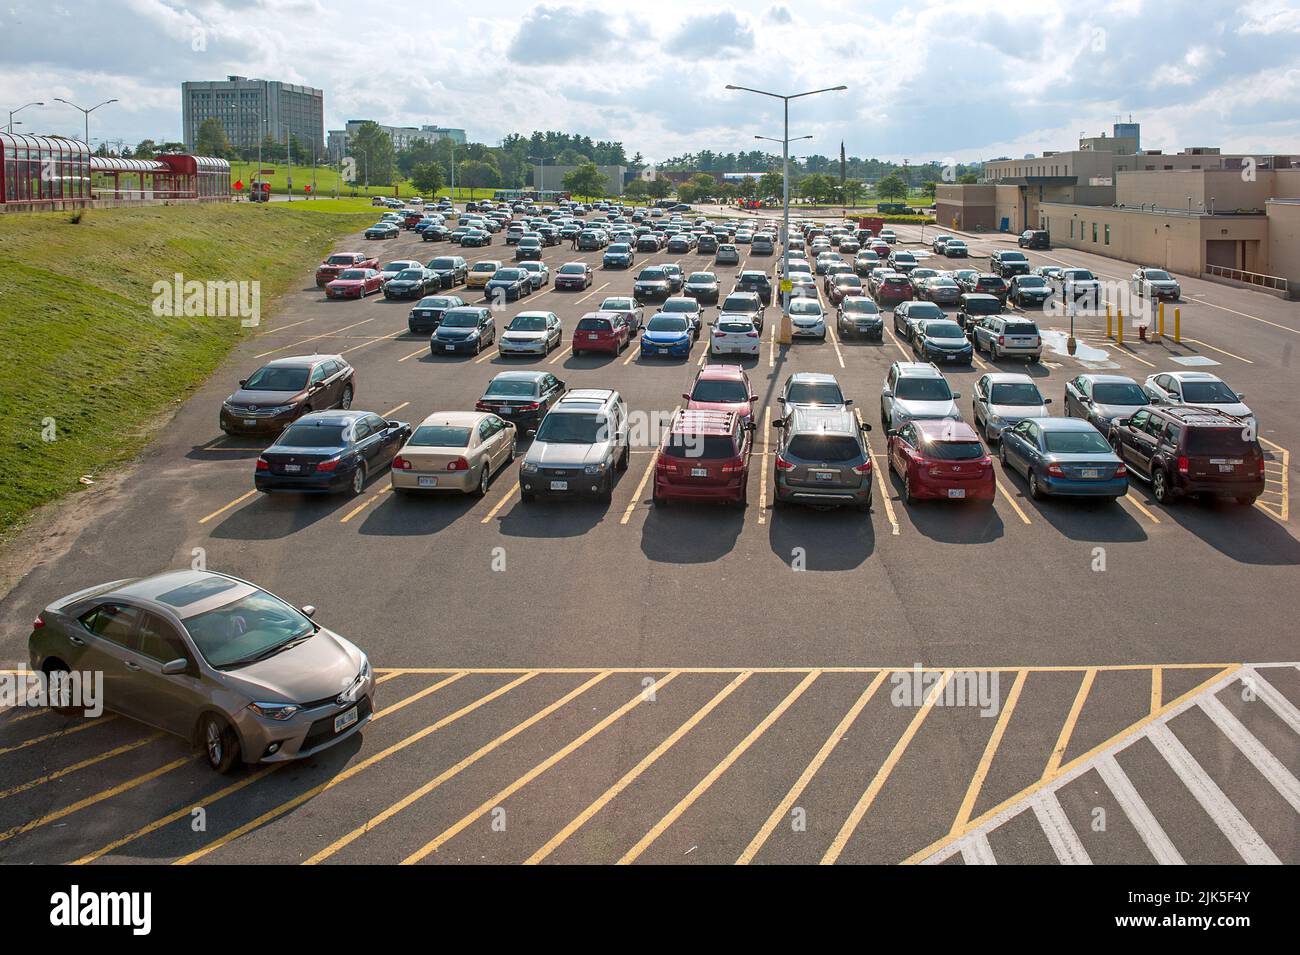 panoramica di un parcheggio praticamente completo per il centro commerciale. Foto Stock